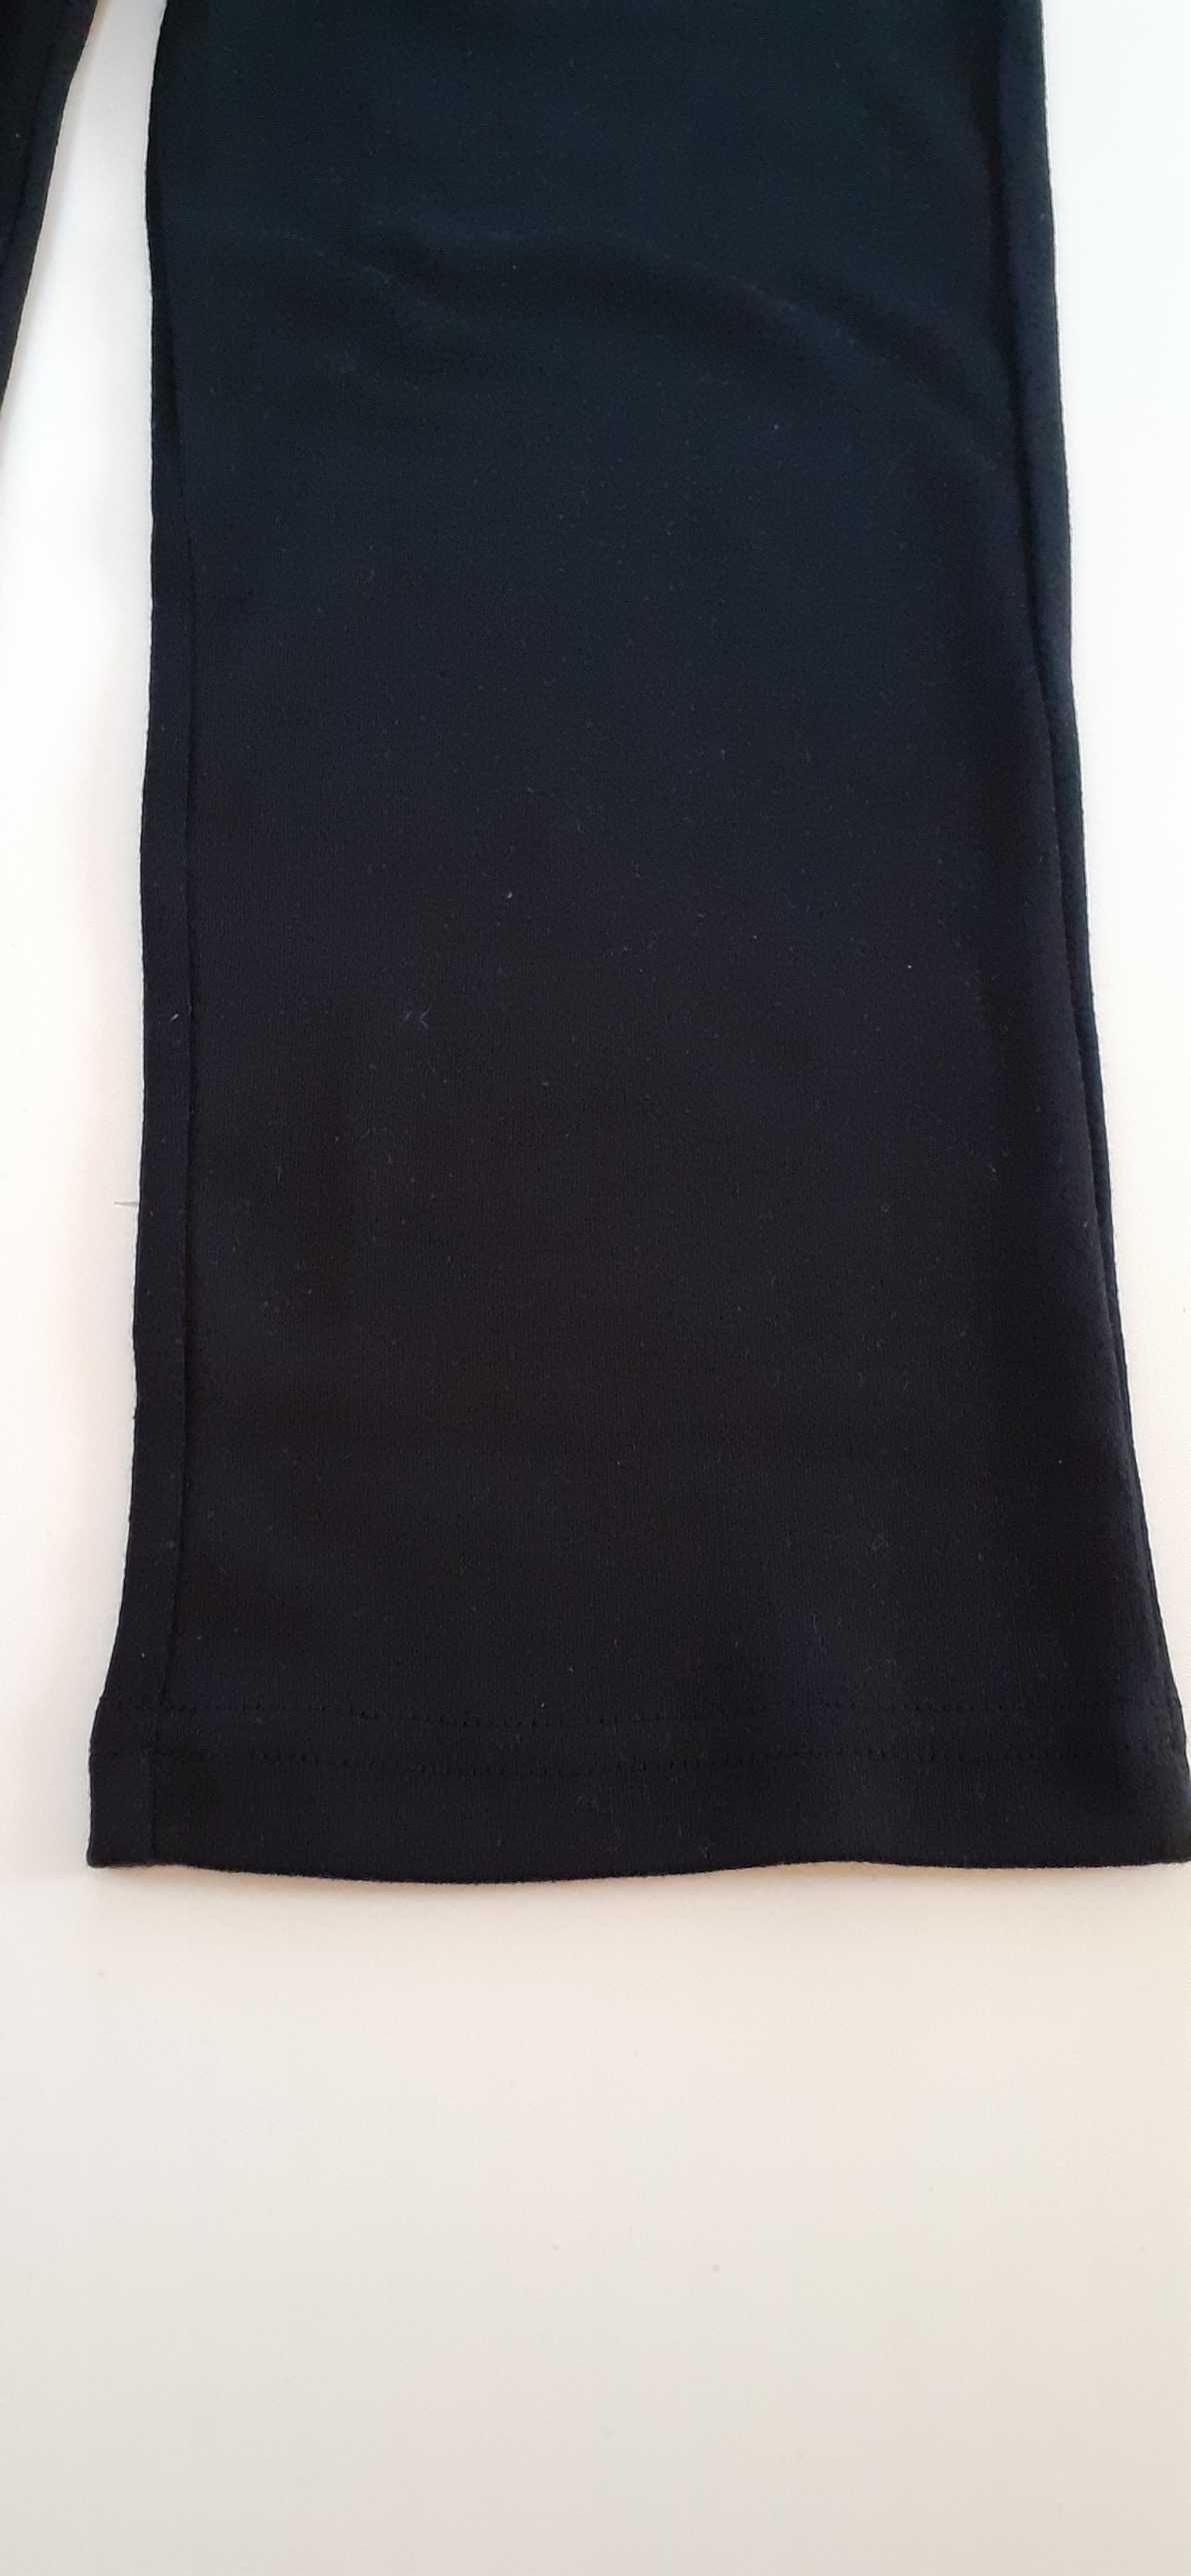 Новые женские спортивные штаны LA GEAR размер 14 (L) черные